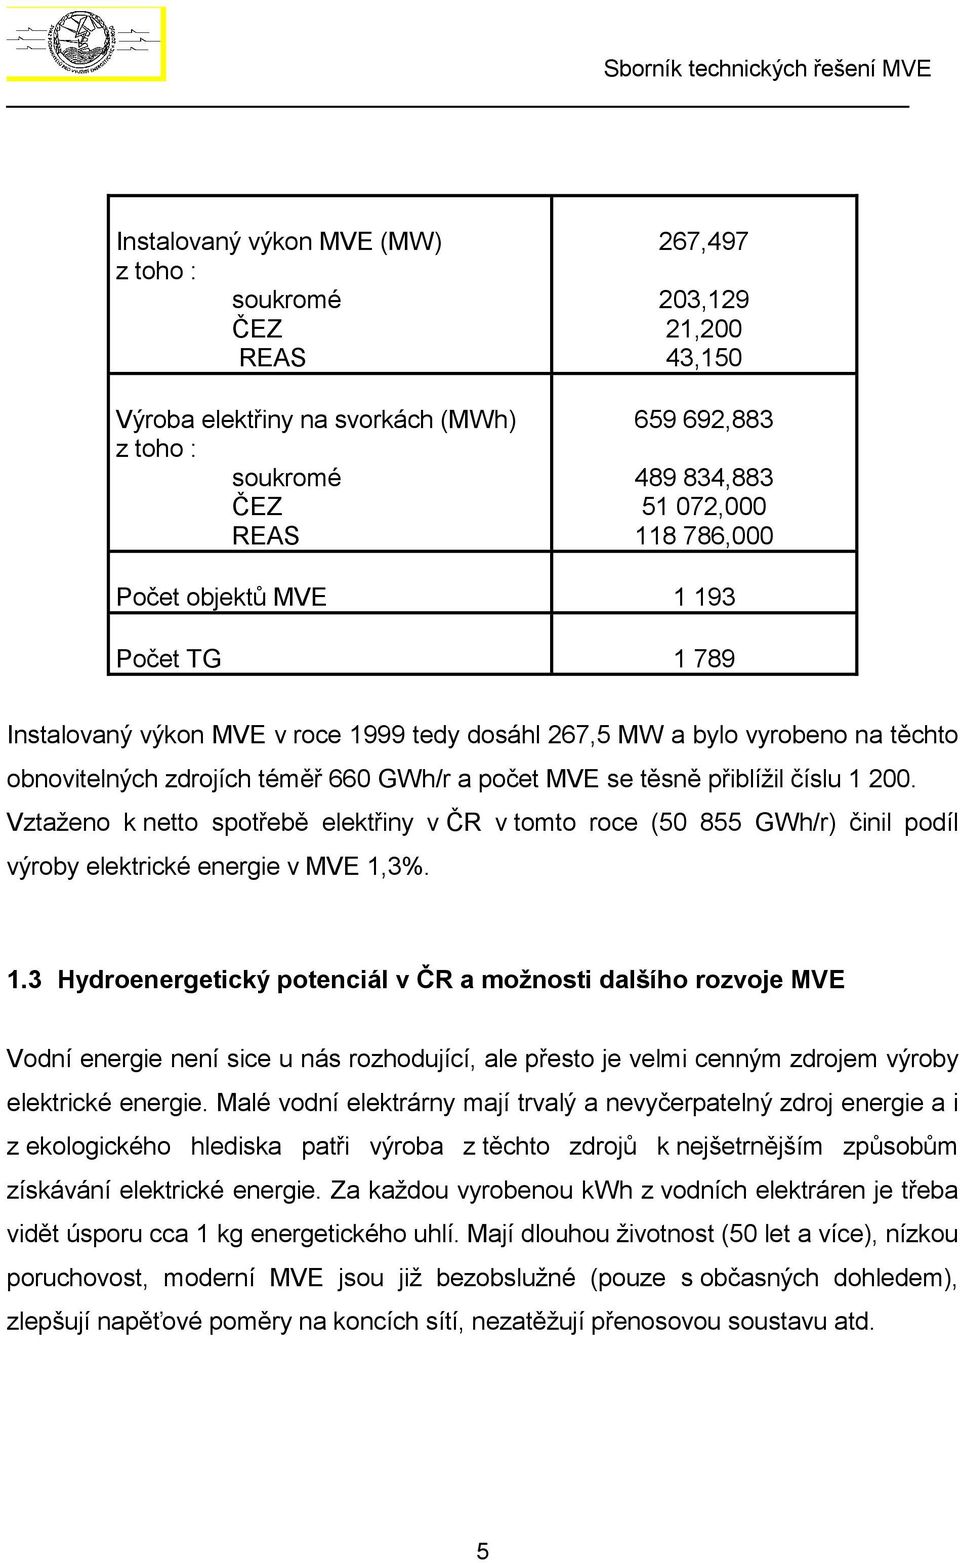 Vztaženo k netto spotřebě elektřiny v ČR v tomto roce (50 855 GWh/r) činil podíl výroby elektrické energie v MVE 1,